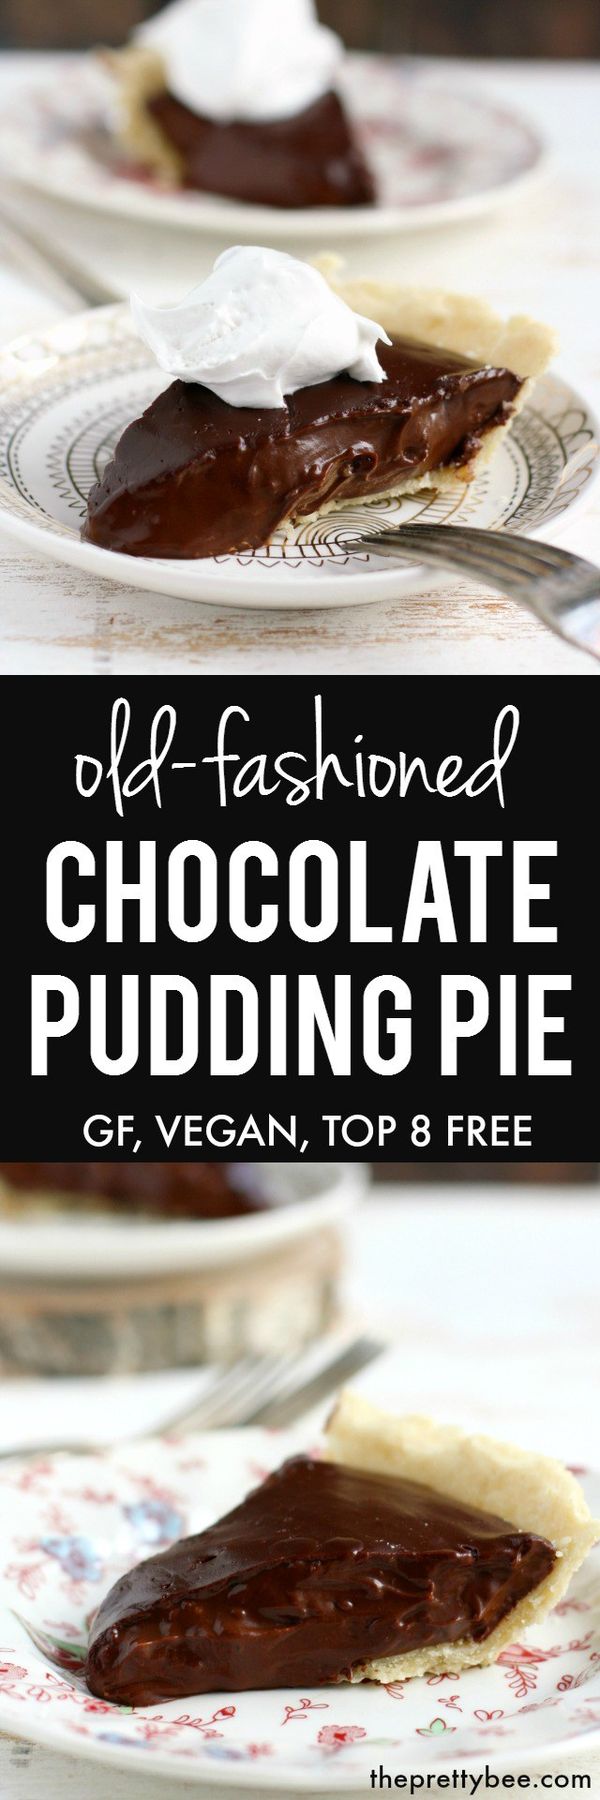 Chocolate Pudding Pie (Dairy Free, Vegan, GF